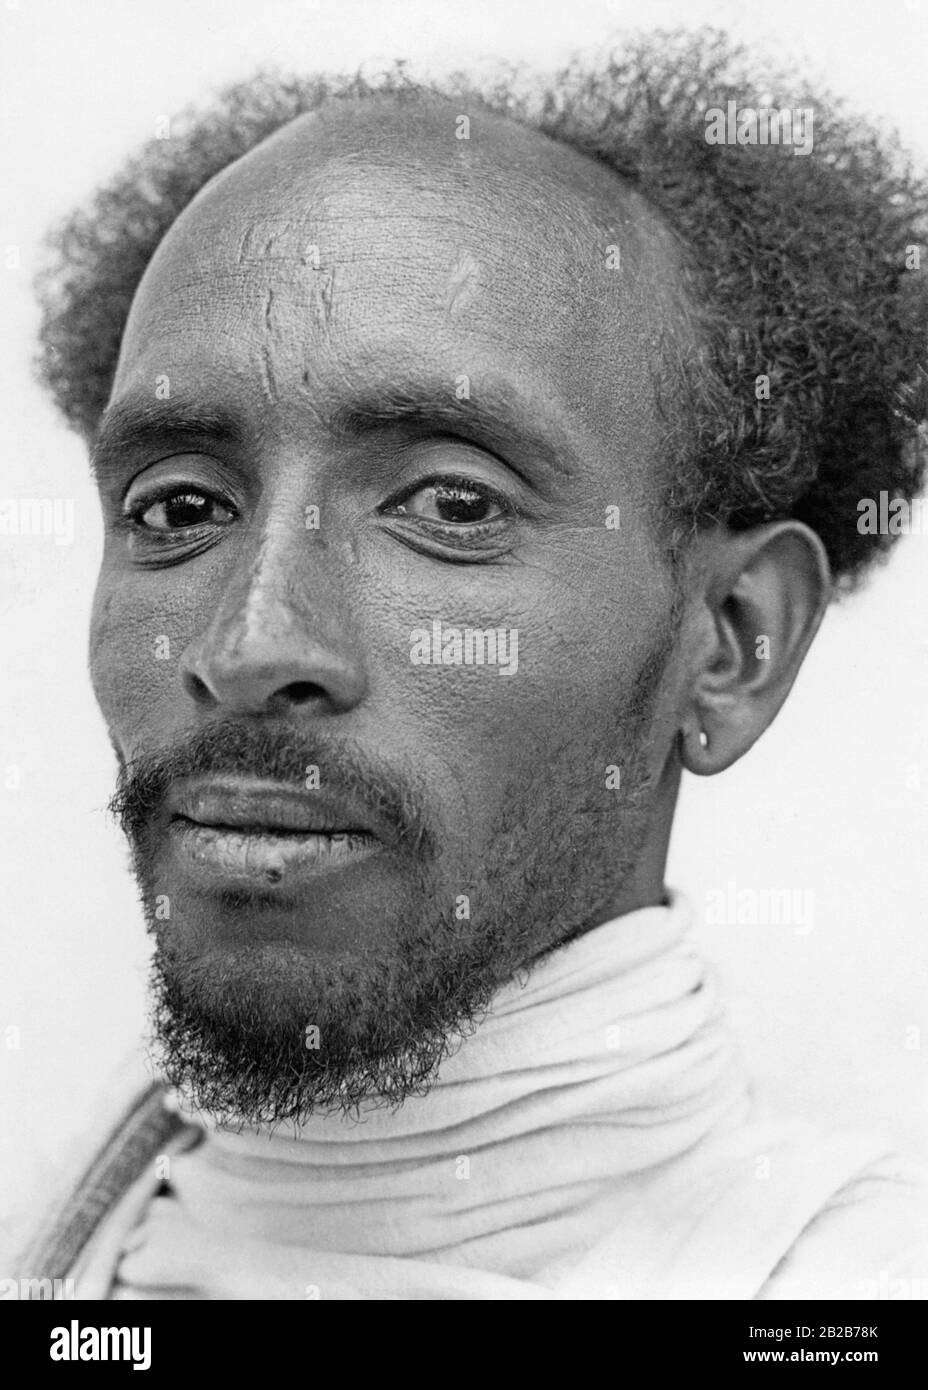 Ein Mitglied der ethnischen Gruppe der Tigray aus dem abessinischen Hochland, heute im Grenzgebiet zwischen Äthiopien und Eritrea. Er ist Direktor einer Schule, die vom abessinischen Kaiser unterstützt wird. Stockfoto